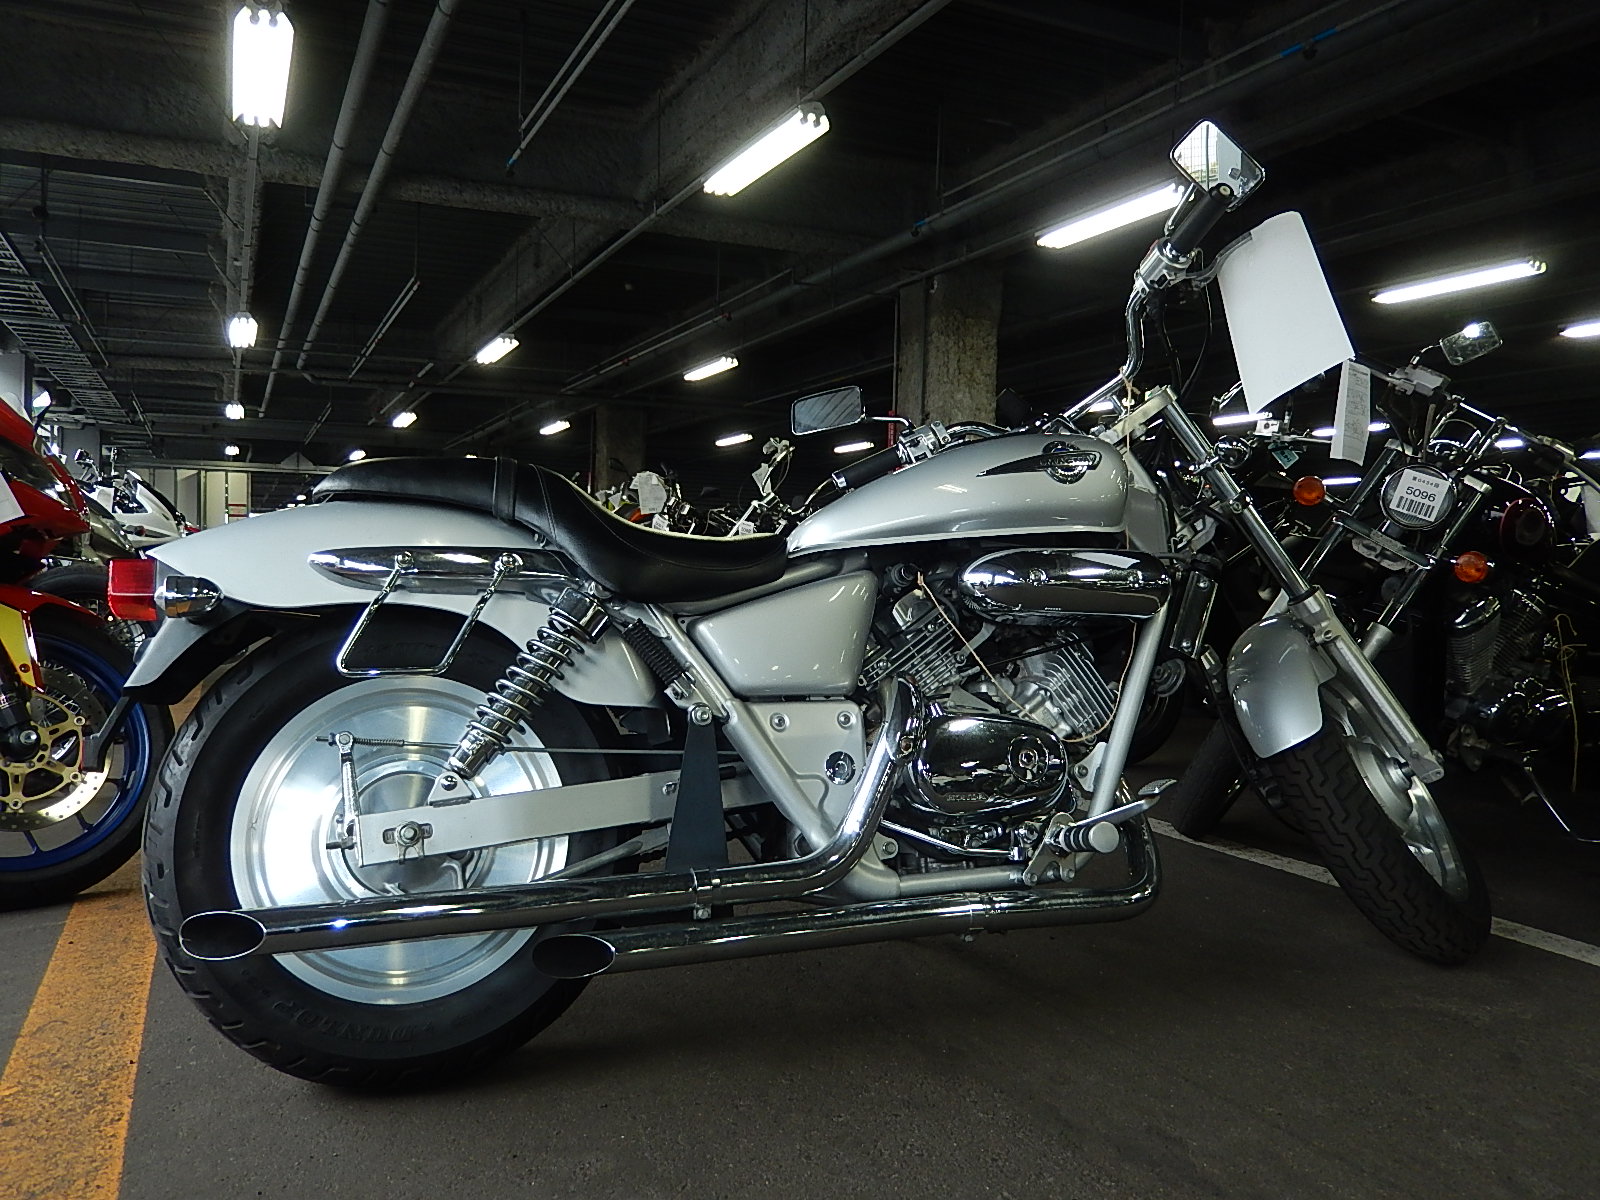 Обзор мотоцикла honda magna 250